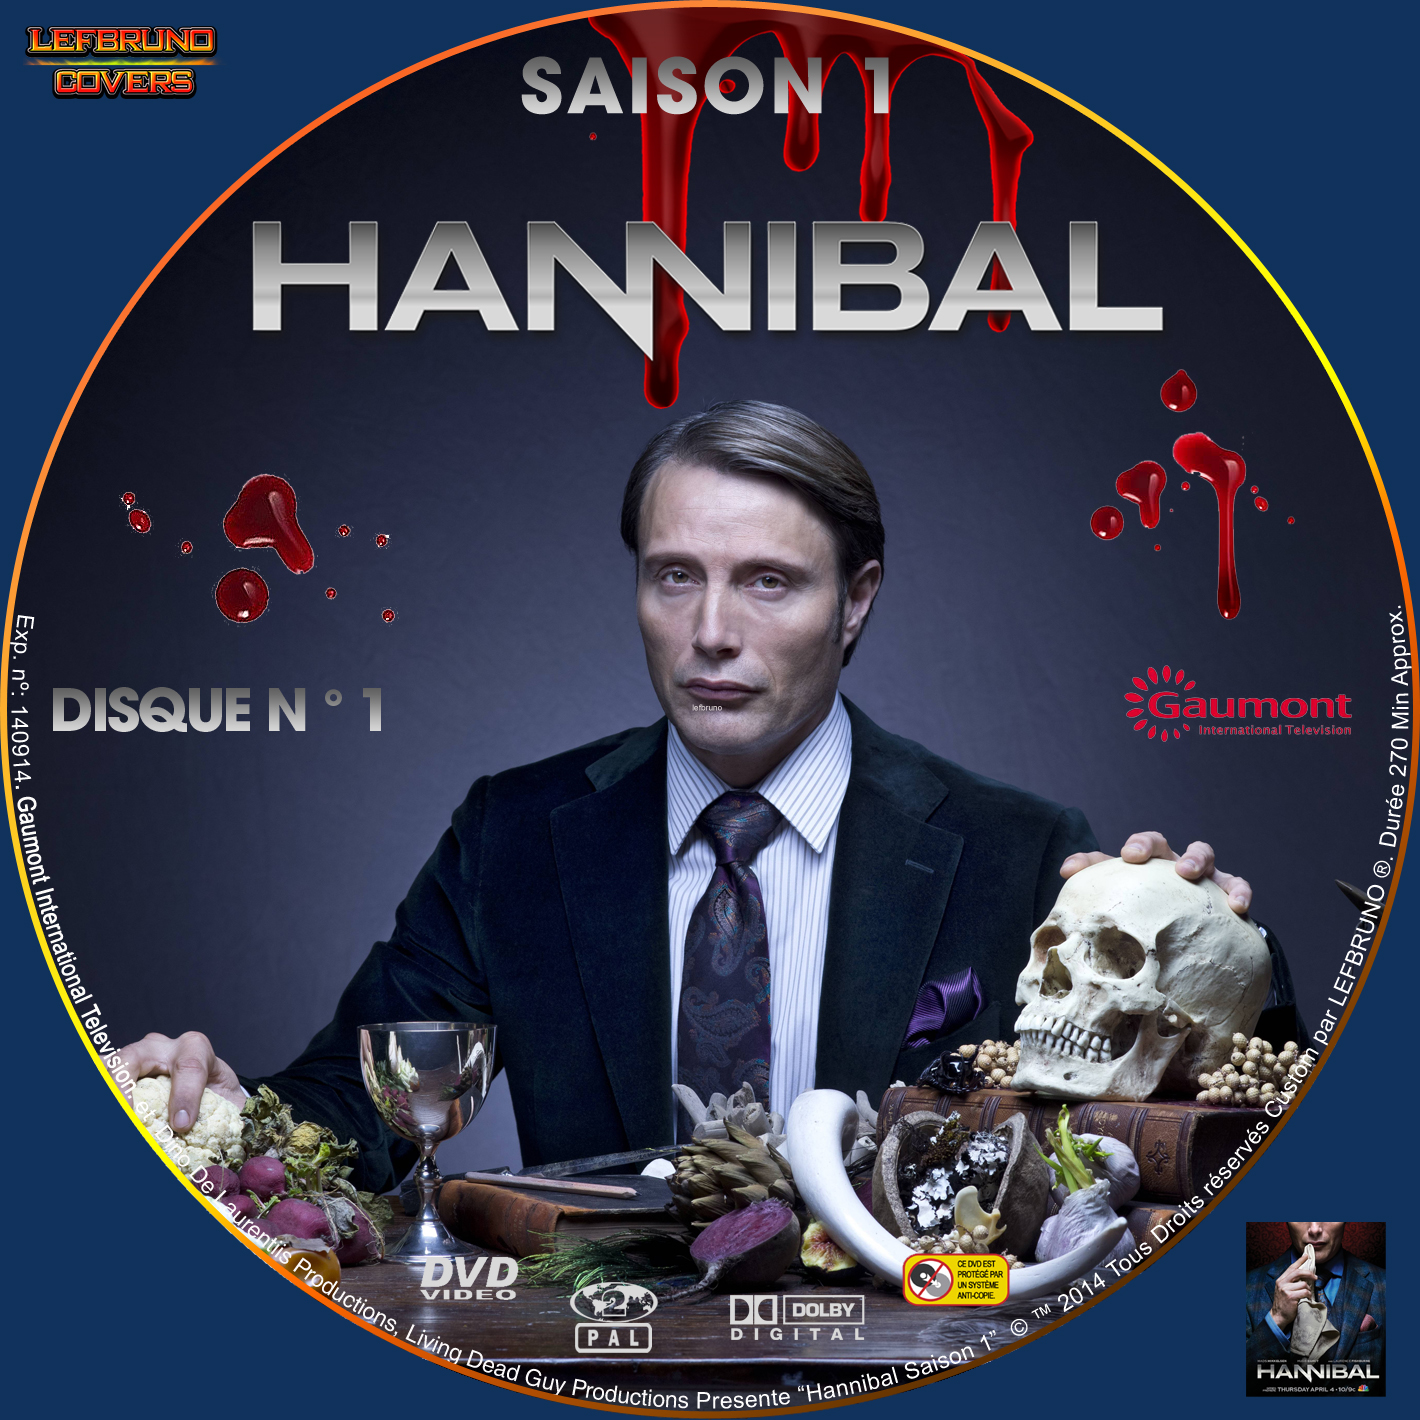 Hannibal Saison 1 DISC 1 custom